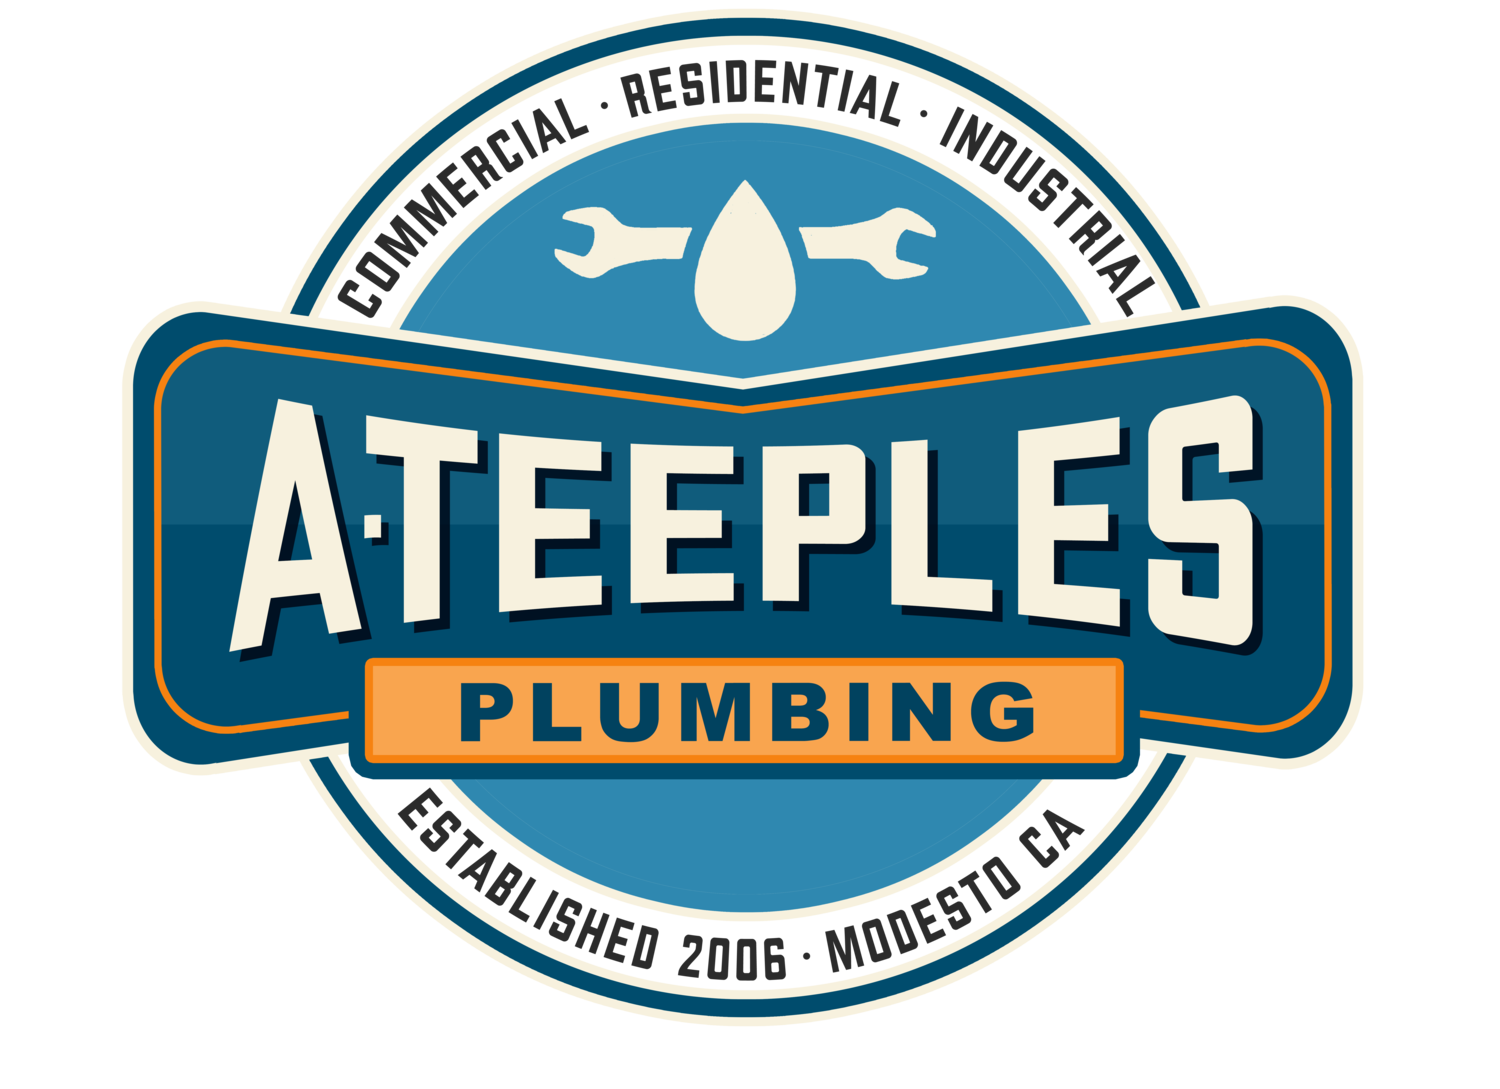 Teeples Plumbing